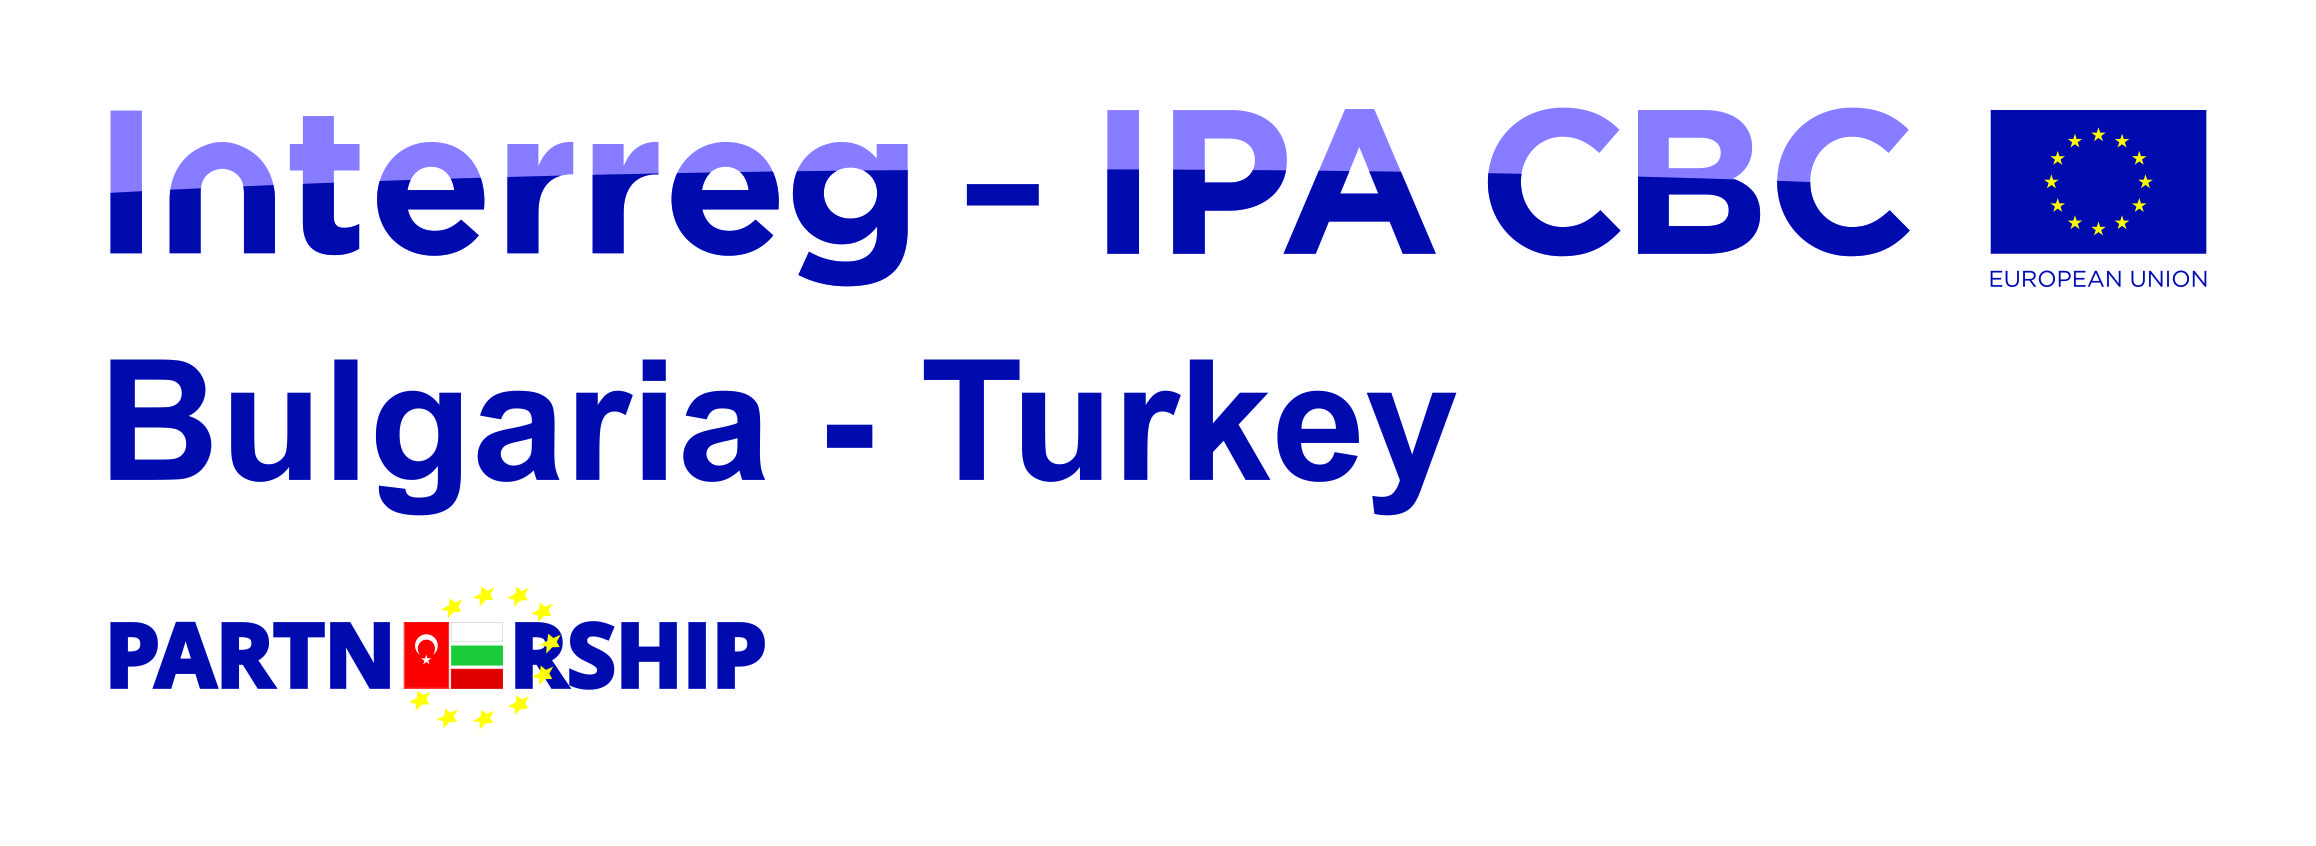 Interreg IPA CBC Bulgaria - Turkey logo